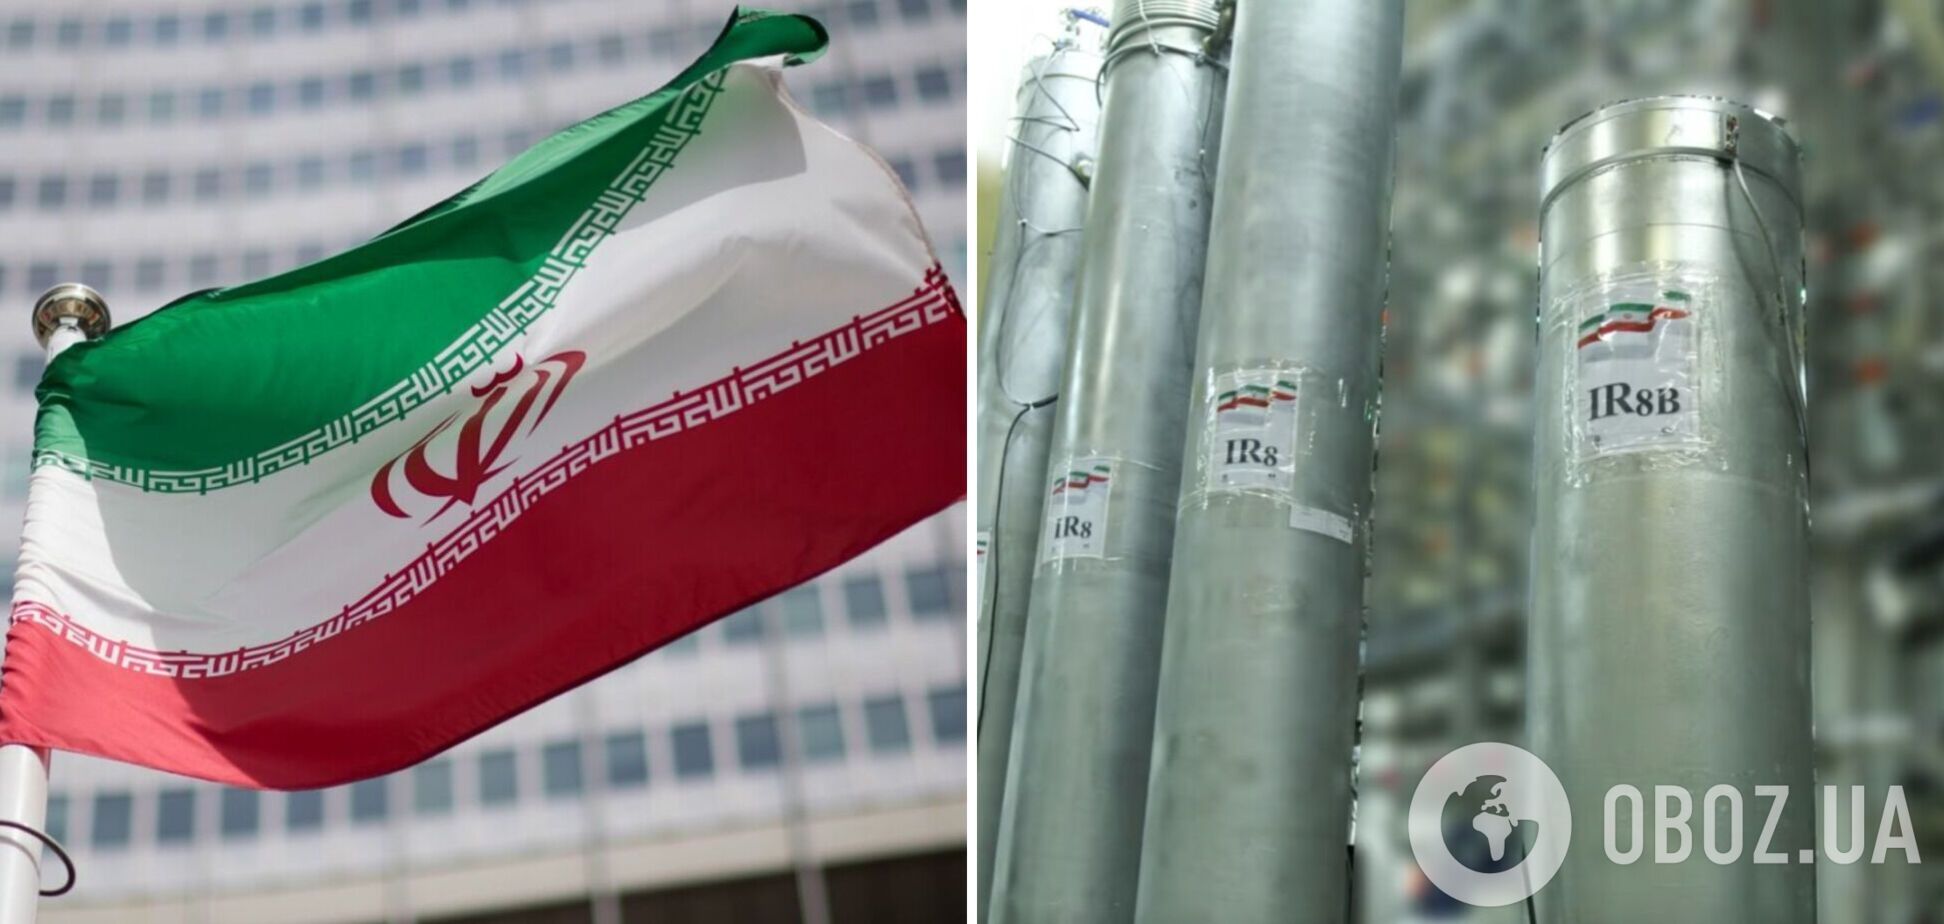 Іран активно розвиває свою ядерну програму